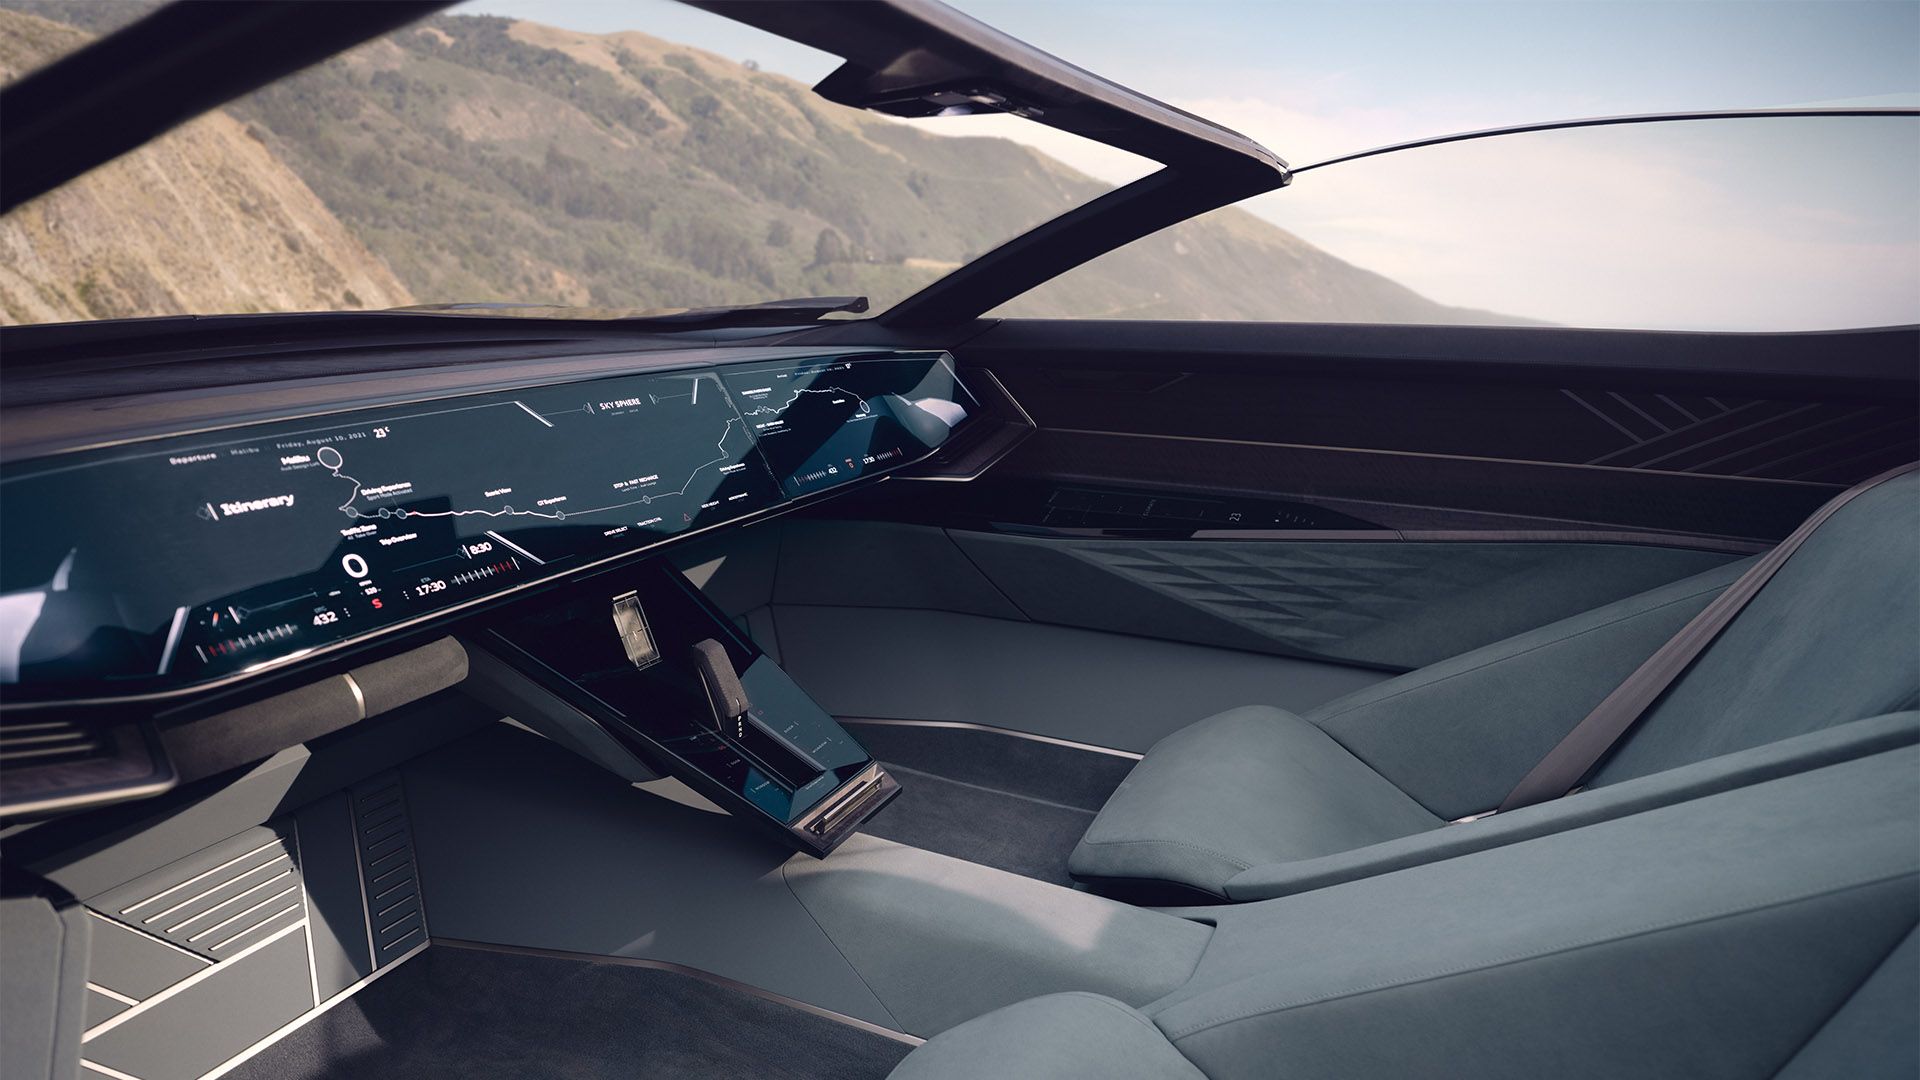 奥迪 skysphere 概念车在“Grand Touring”模式下的驾驶舱侧视图。